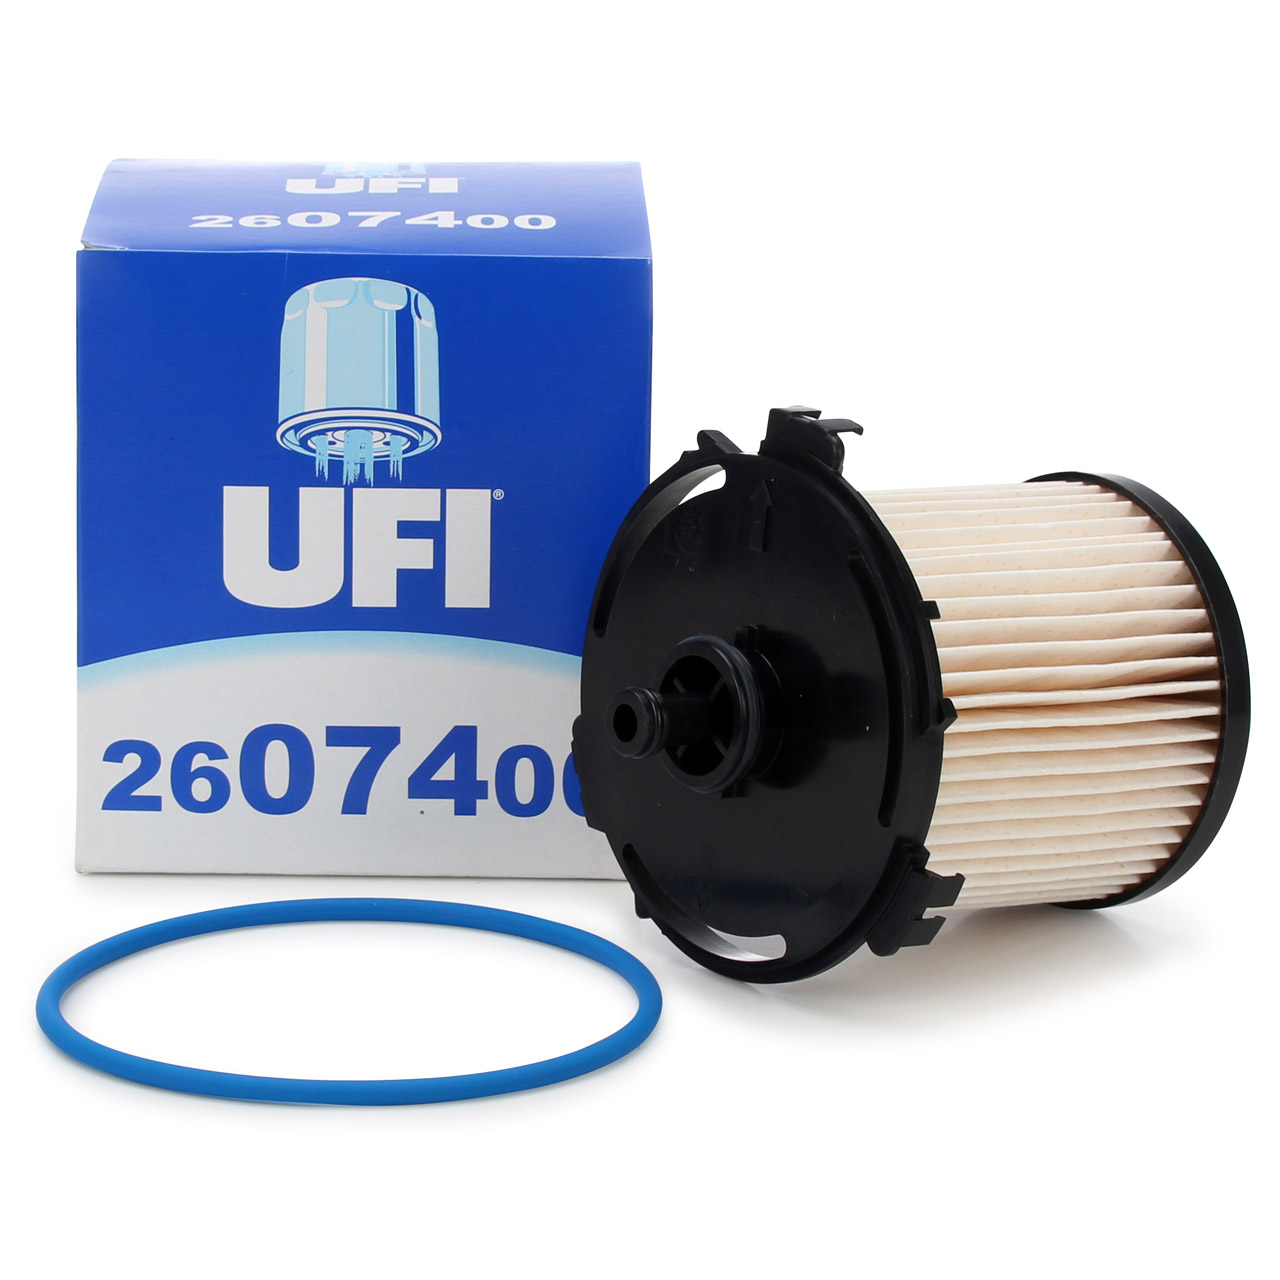 UFI 26.074.00 Kraftstofffilter Dieselfilter FORD Transit V363 Tourneo Custom V362 2.2 TDCI